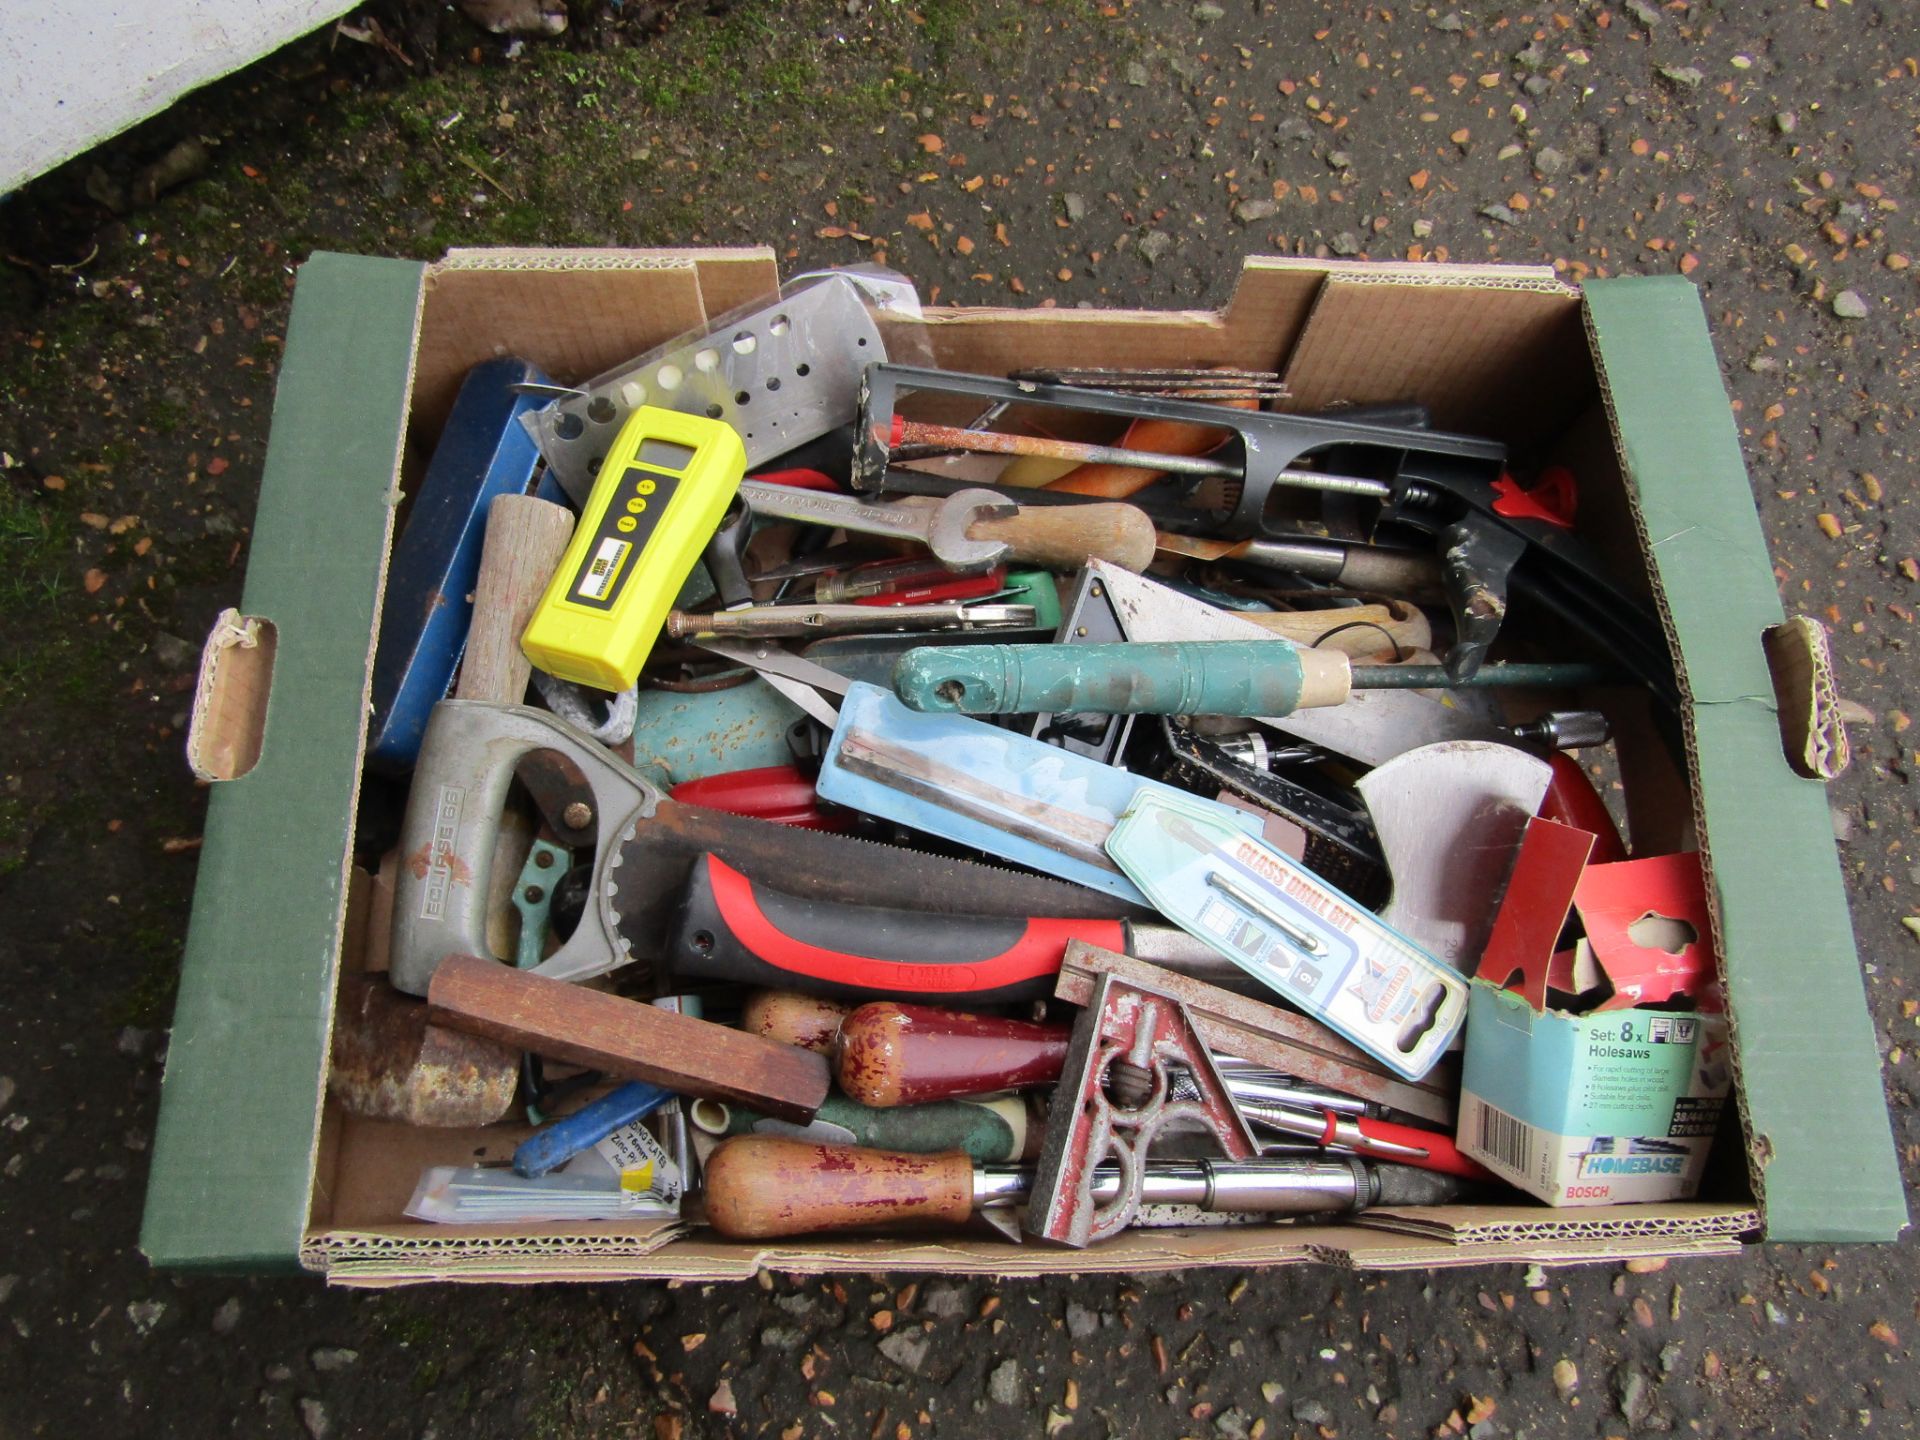 Tray of mixed tools